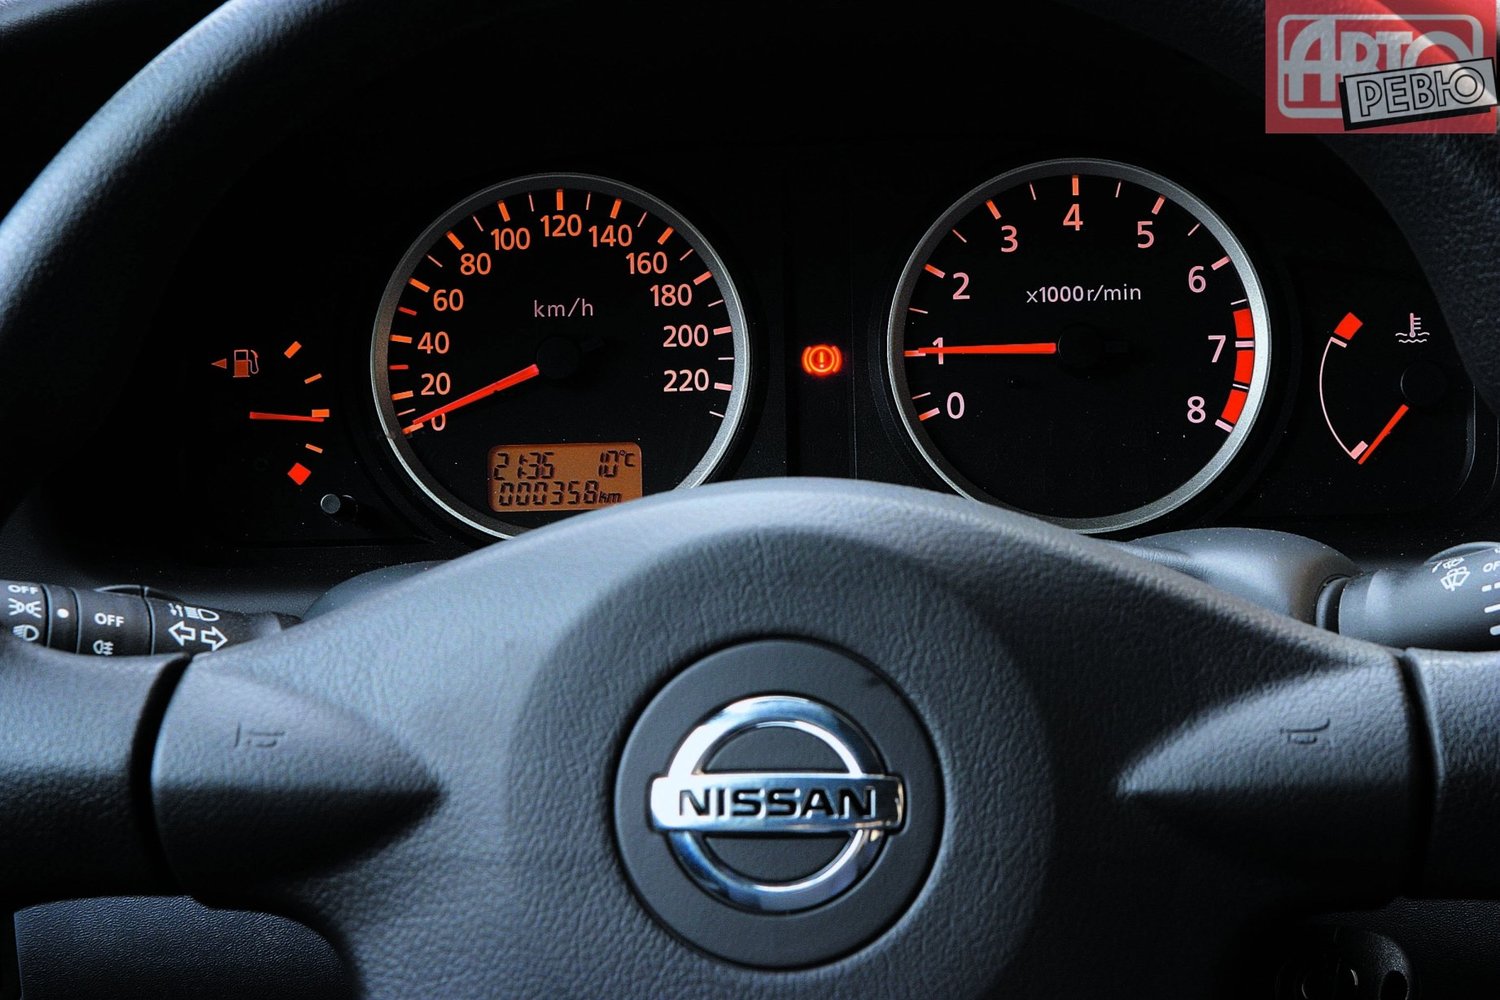 хэтчбек 3 дв. Nissan Almera 2003 - 2006г выпуска модификация 1.5 MT (82 л.с.)